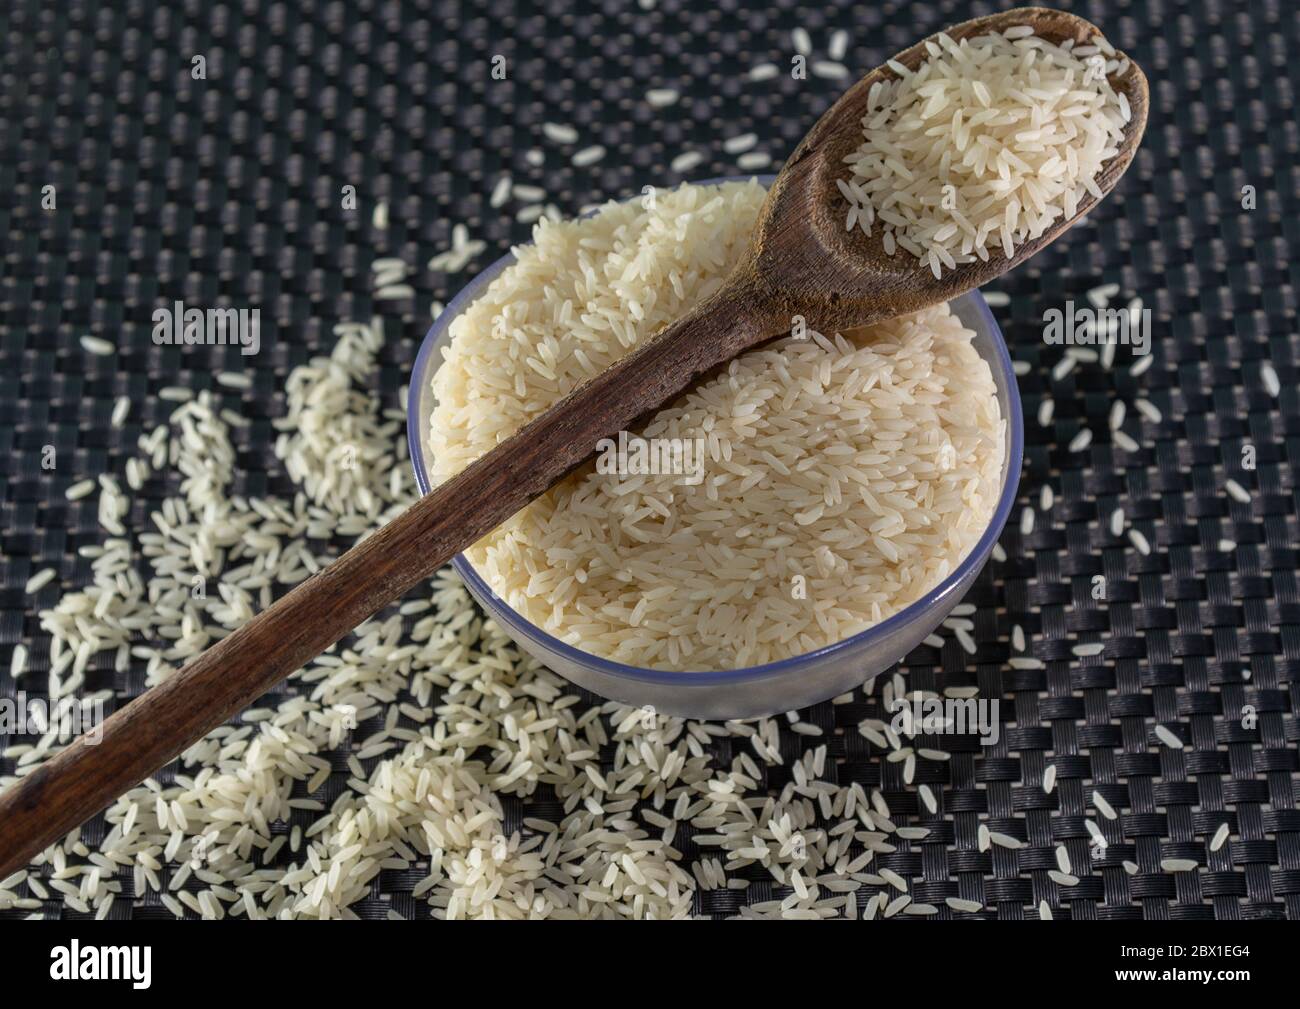 Arroz pelado y procesado de grano sobre fondo oscuro. Cereales de arroz y ornamentos de cocina. Granos semi-procesados en una olla de plástico y cucharas de madera. Foo Foto de stock